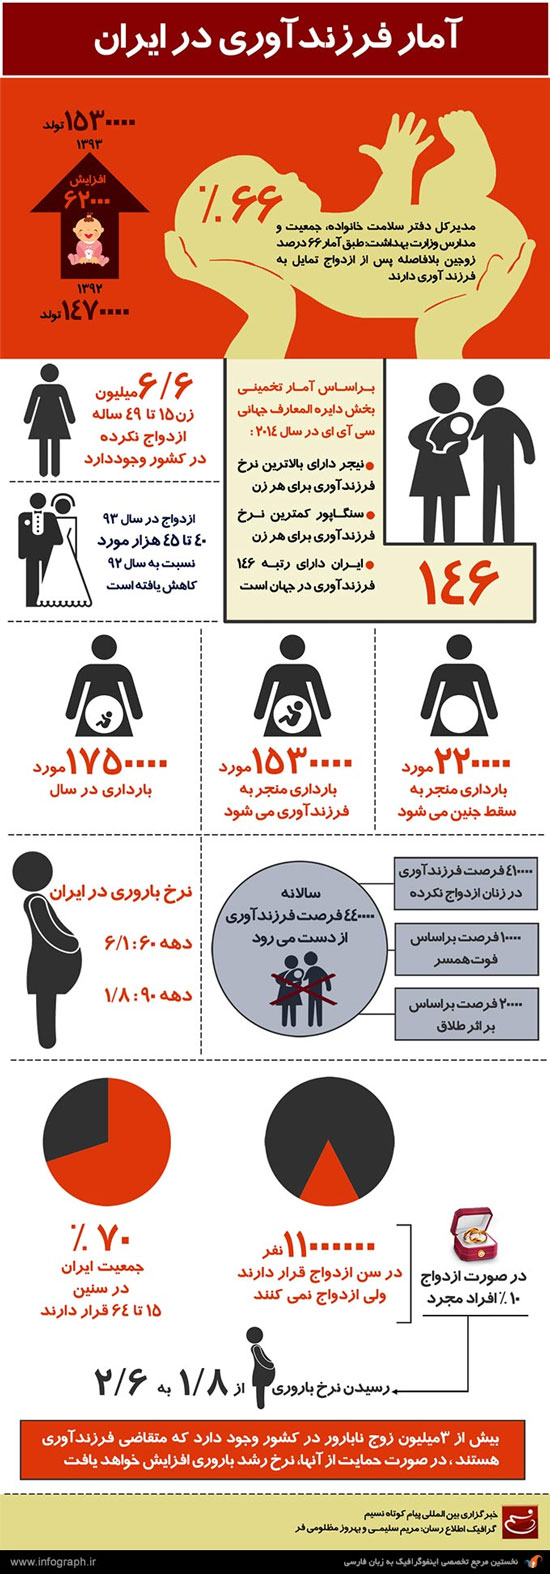 آمار فرزندآوری در ایران